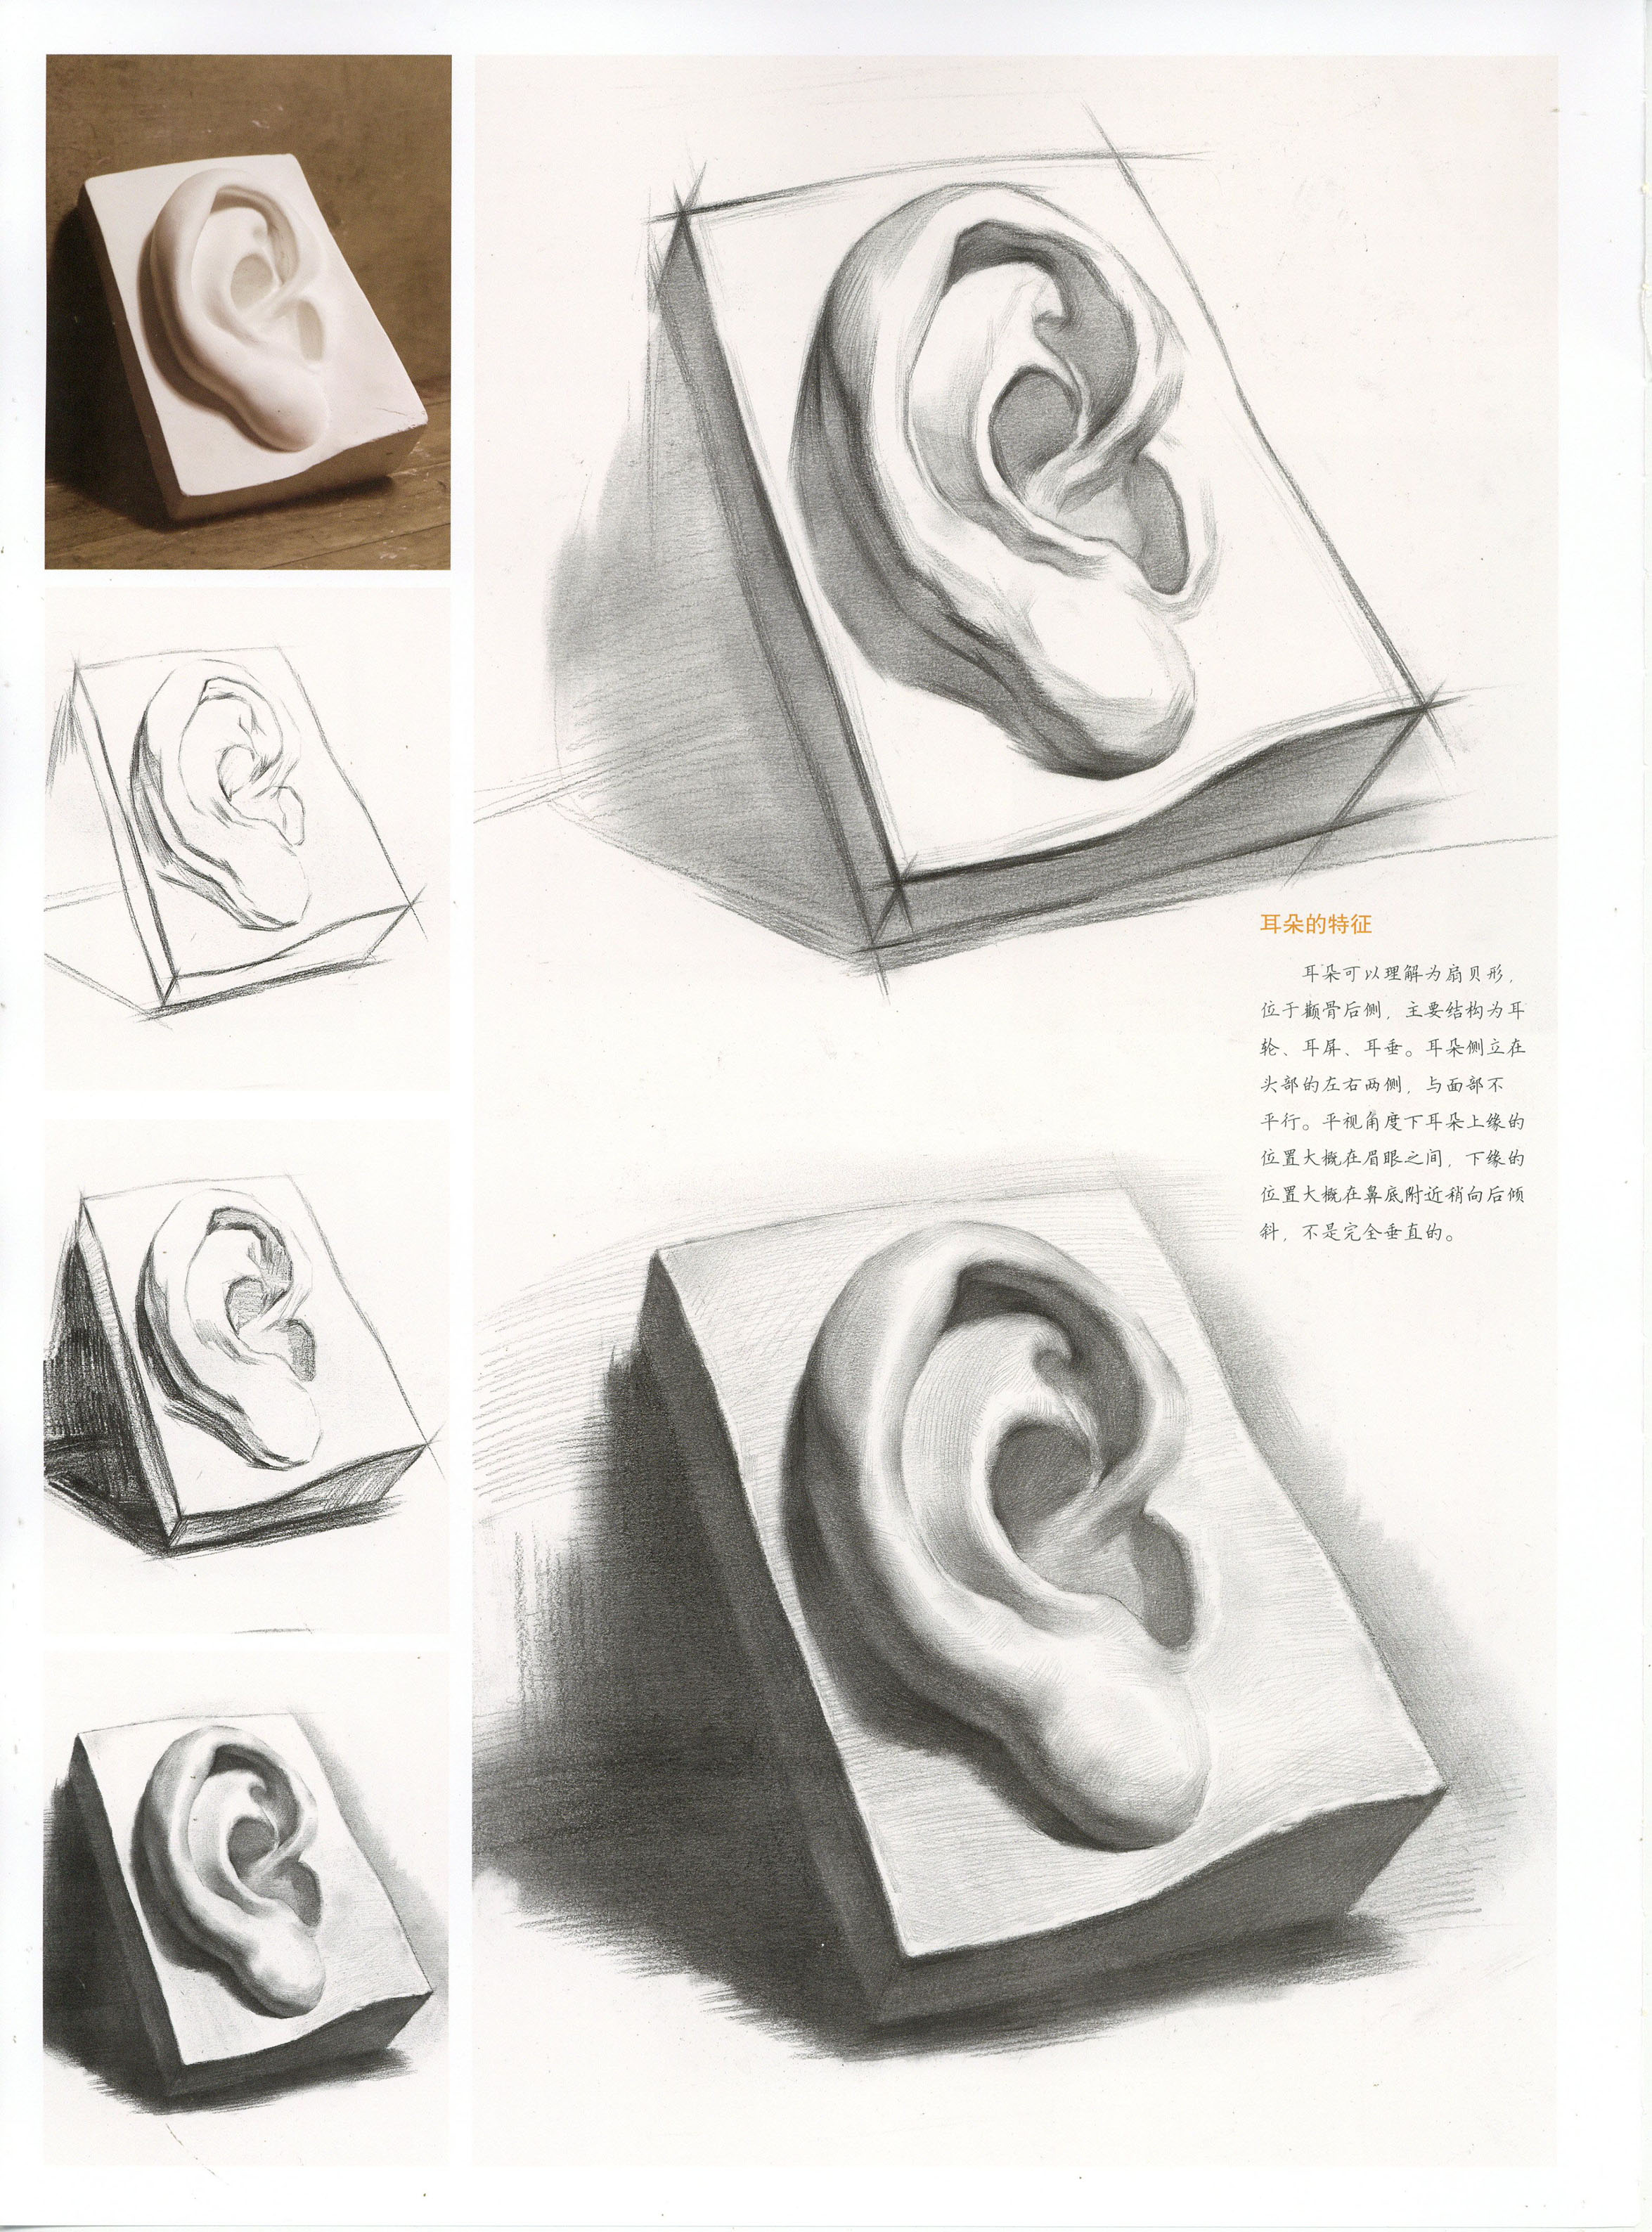 石膏耳朵素描图片大全 结构明暗画法步骤教程